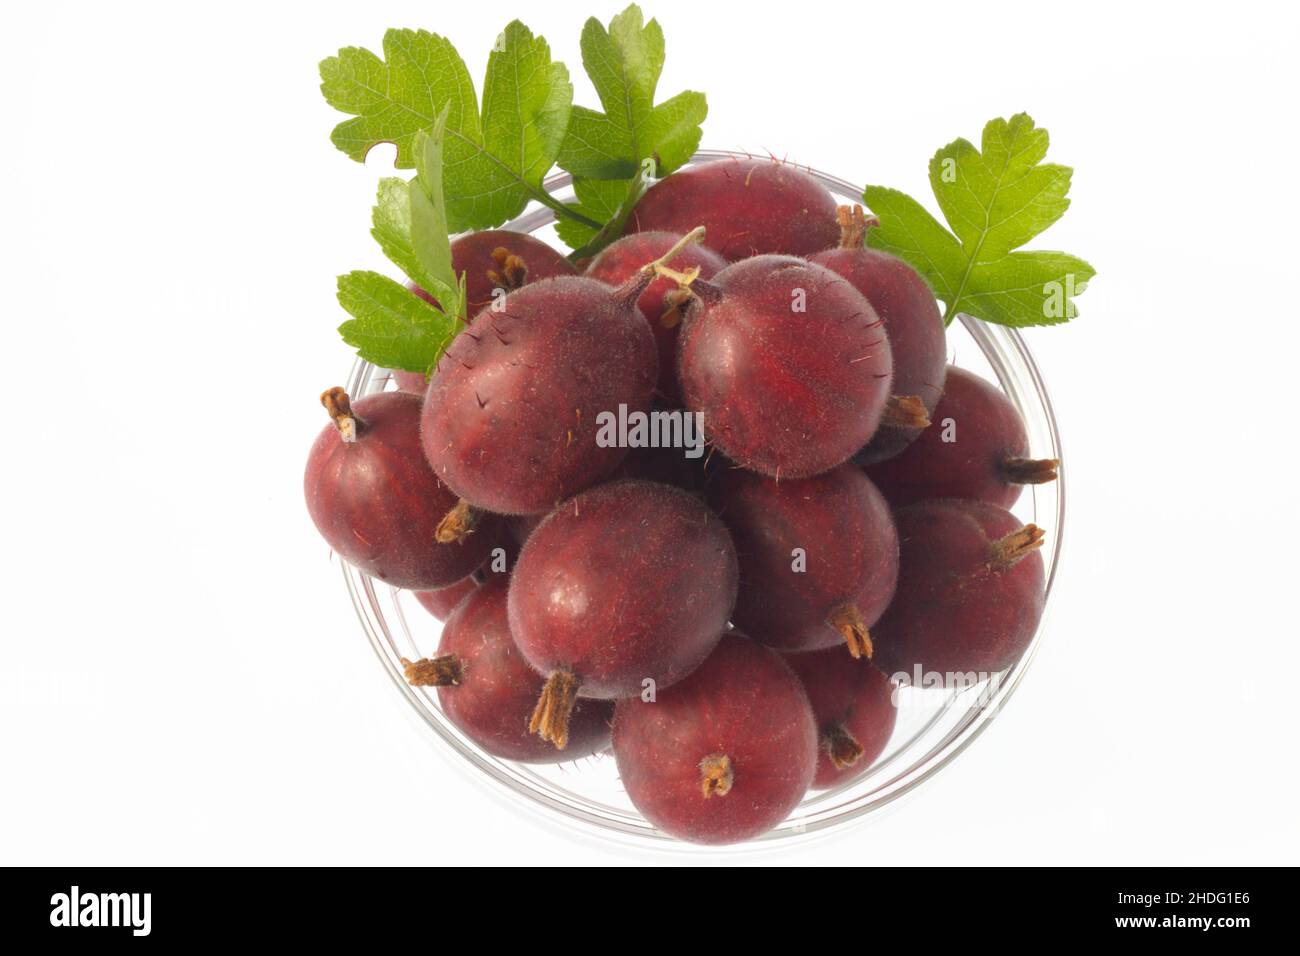 gooseberry, gooseberries Stock Photo